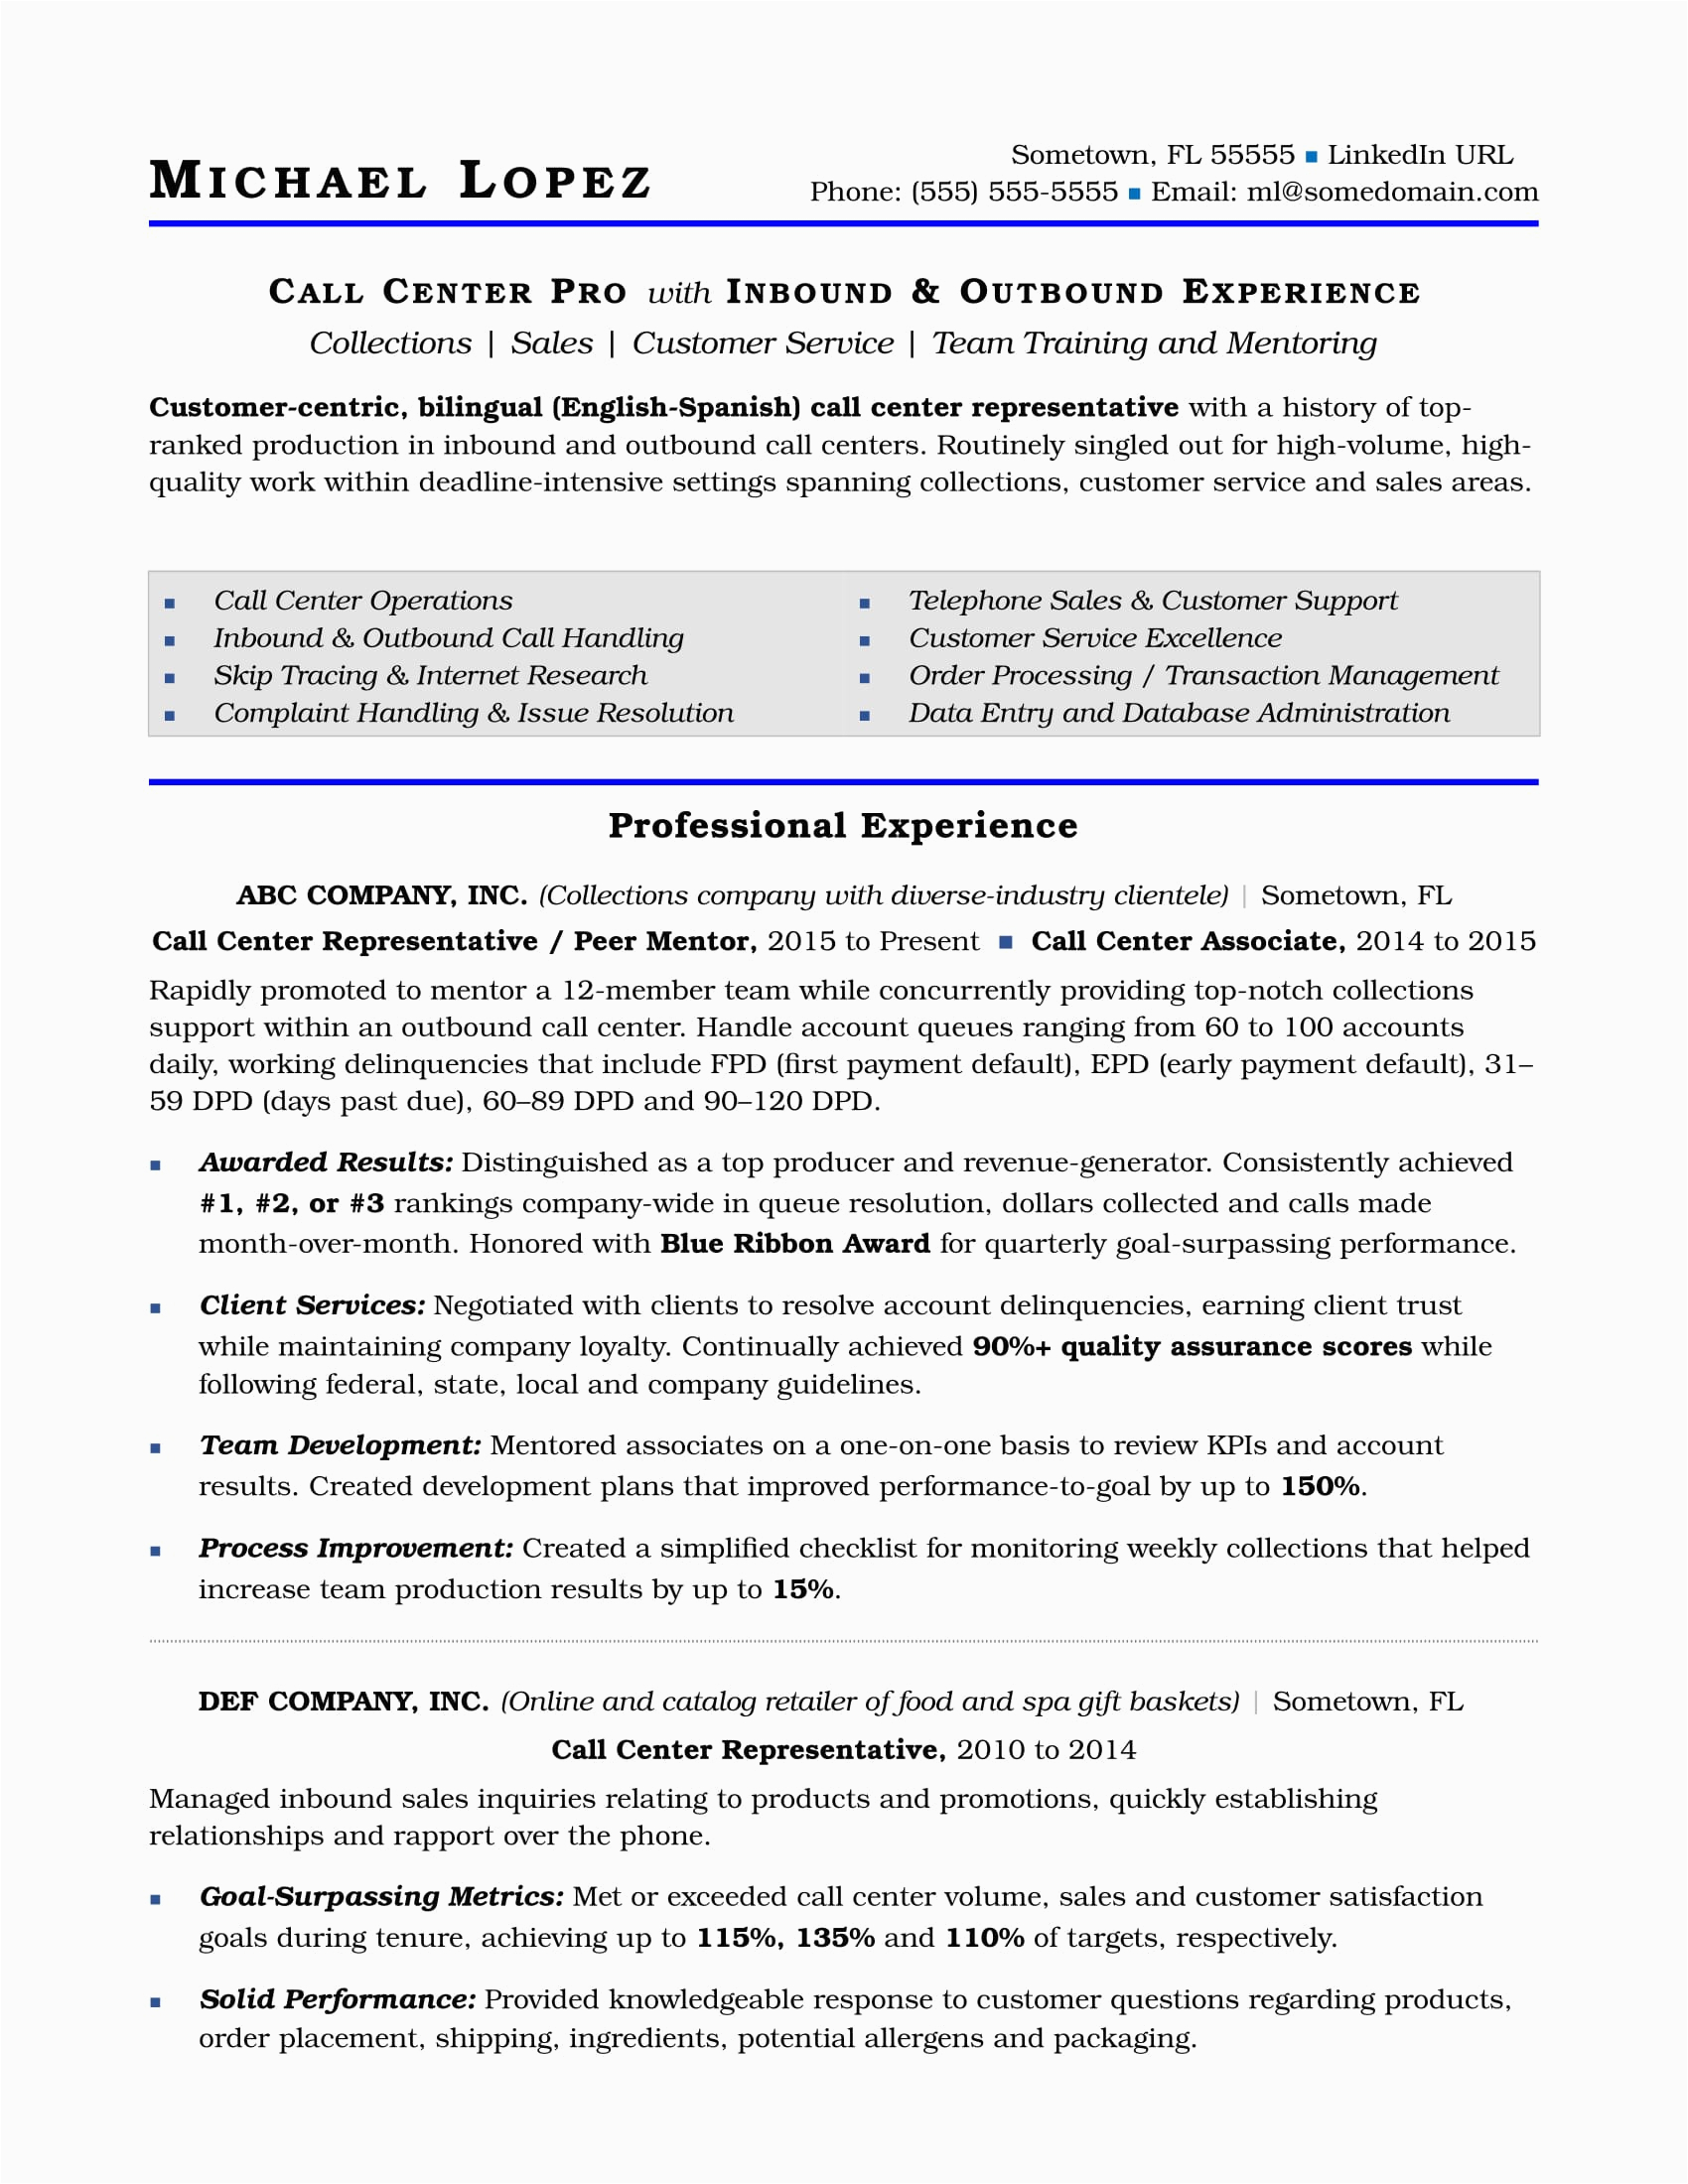 Resume Objective Sample for Call Center Call Center Resume Sample